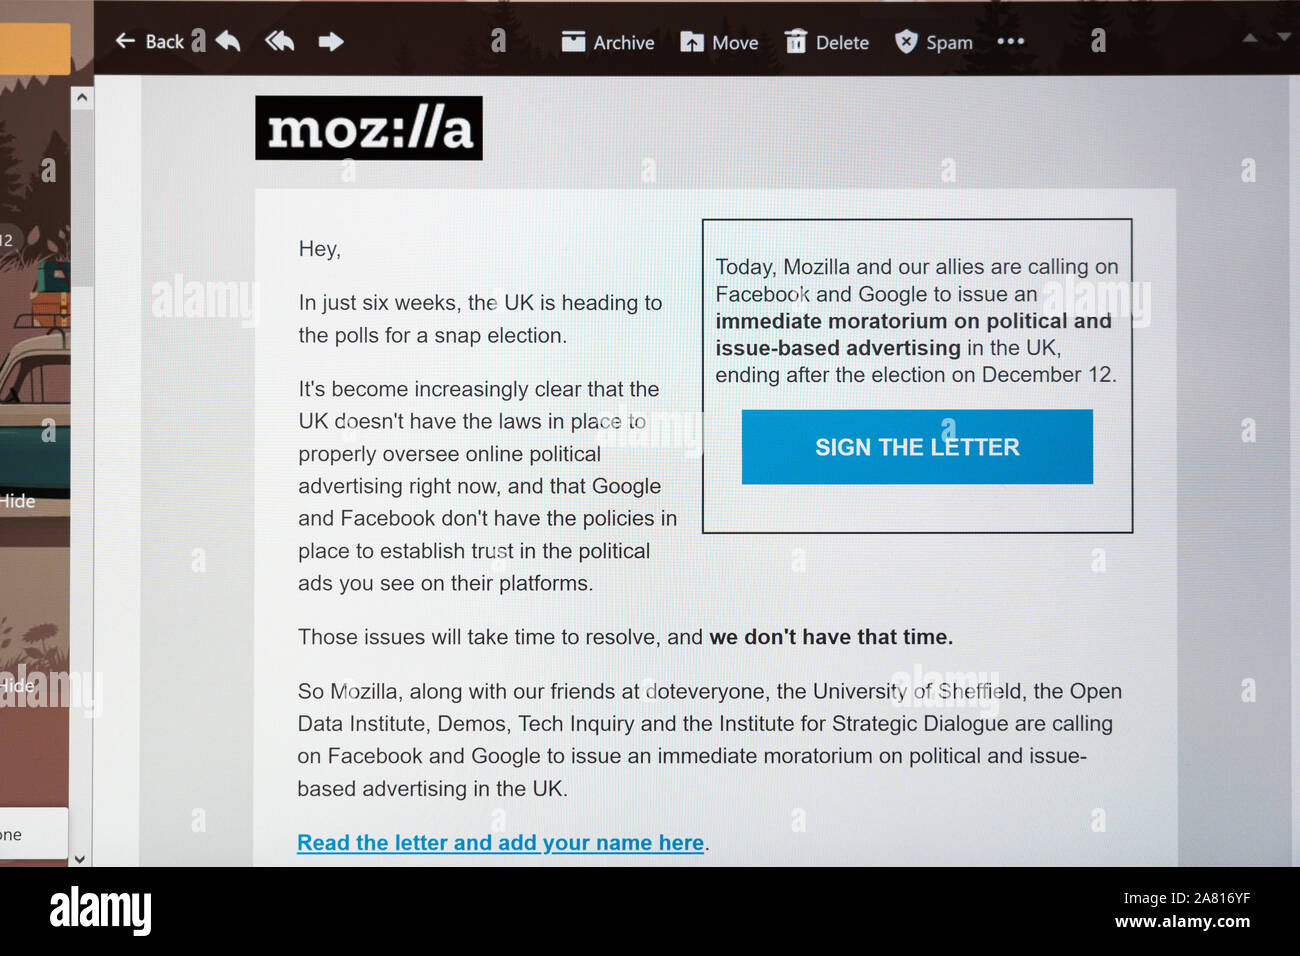 Eine e-Mail Anfrage ein offener Brief von Mozilla, Google und Facebook für ein Verbot politischer Werbung vor der BRITISCHEN allgemeinen Wahl zu unterzeichnen Stockfoto